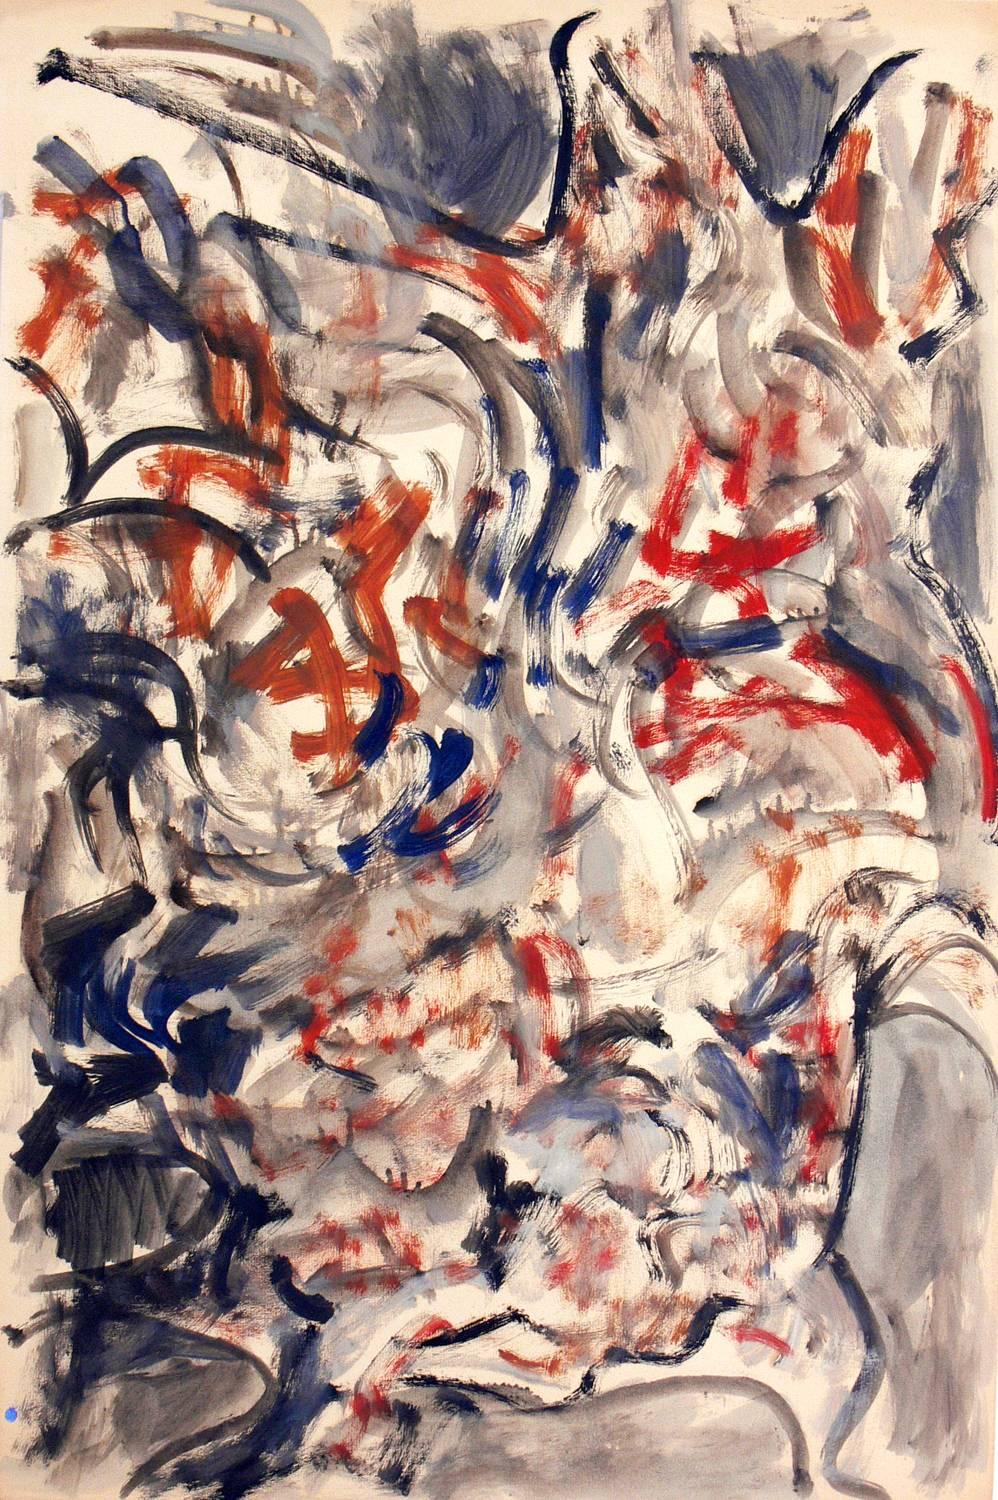 Peinture abstraite de Miriam Kubach, américaine, signée et datée de 1963. Elle est exécutée sur papier et a été encadrée professionnellement sous verre résistant aux UV dans un cadre de galerie en laque noire aux lignes pures.